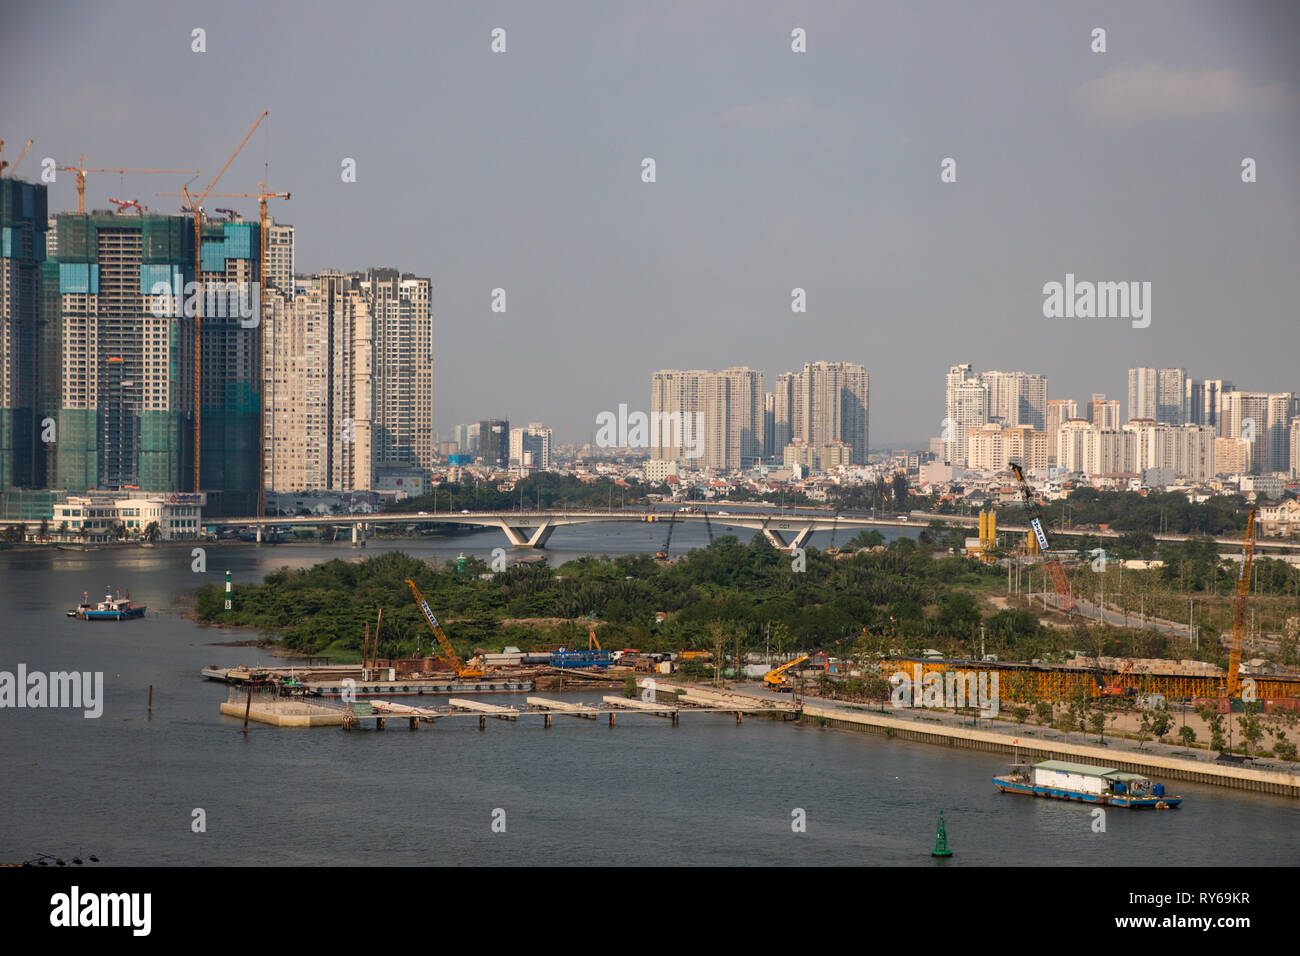 Rivière Saigon, Ho Chi Minh City, Vietnam, dimanche 12 mars 2019. Jour ensoleillé chaud avec des maximums de 34 degrés le long de la rivière. Ho Chi Minh est la plus grande ville au Vietnam avec 9 millions de résidents. Credit : WansfordPhoto/Alamy Live News Banque D'Images